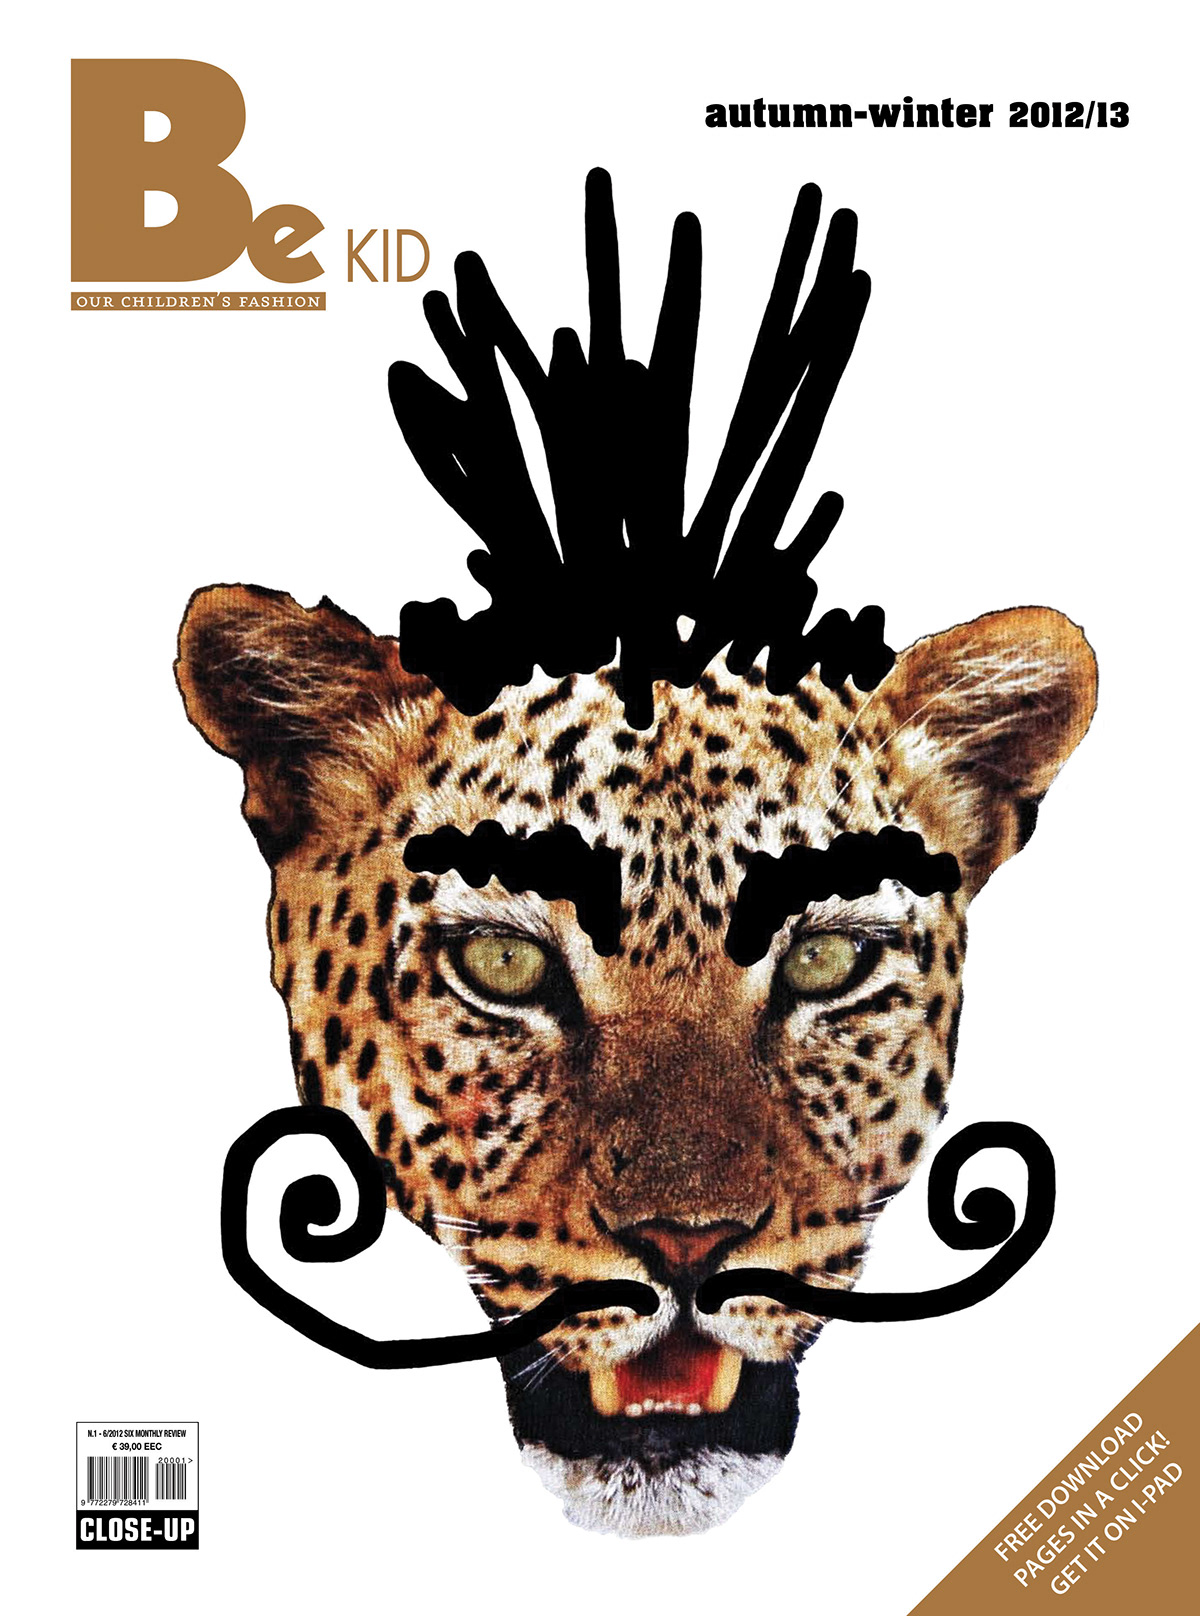 kidswear Childrenswear fashion magazine cover ILLUSTRATION  kids children editorial magazine leopard BE KID mustache baby